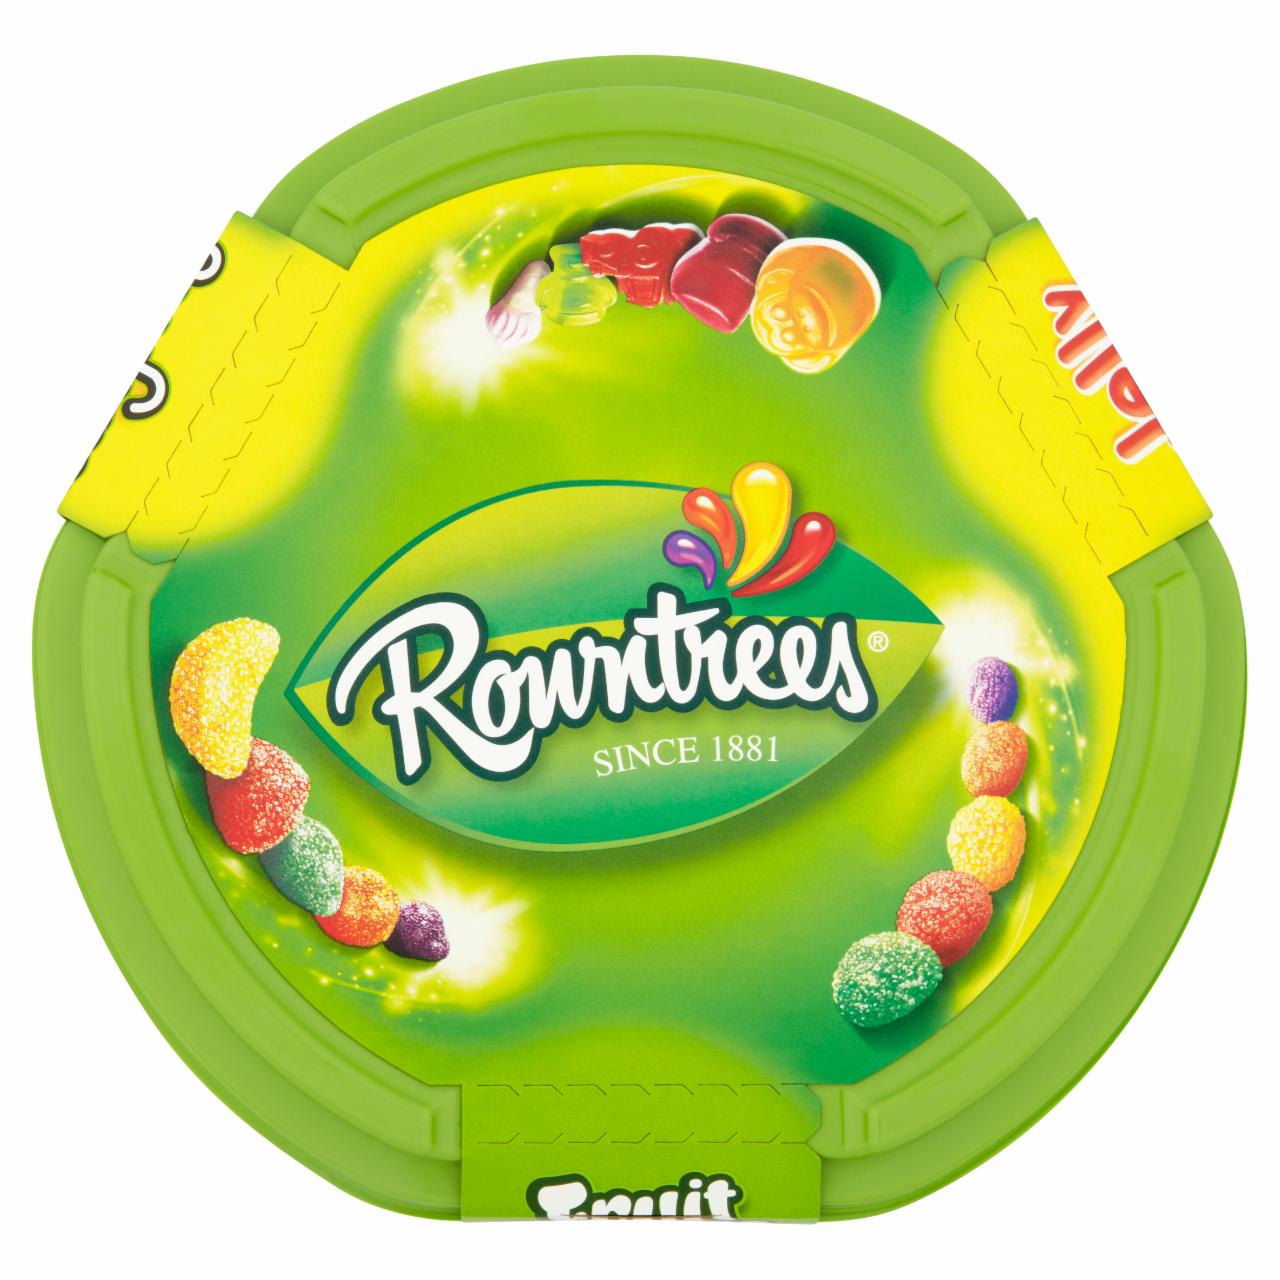 Képek - Rowntrees vegyes gyümölcsízű cukorkák 750 g